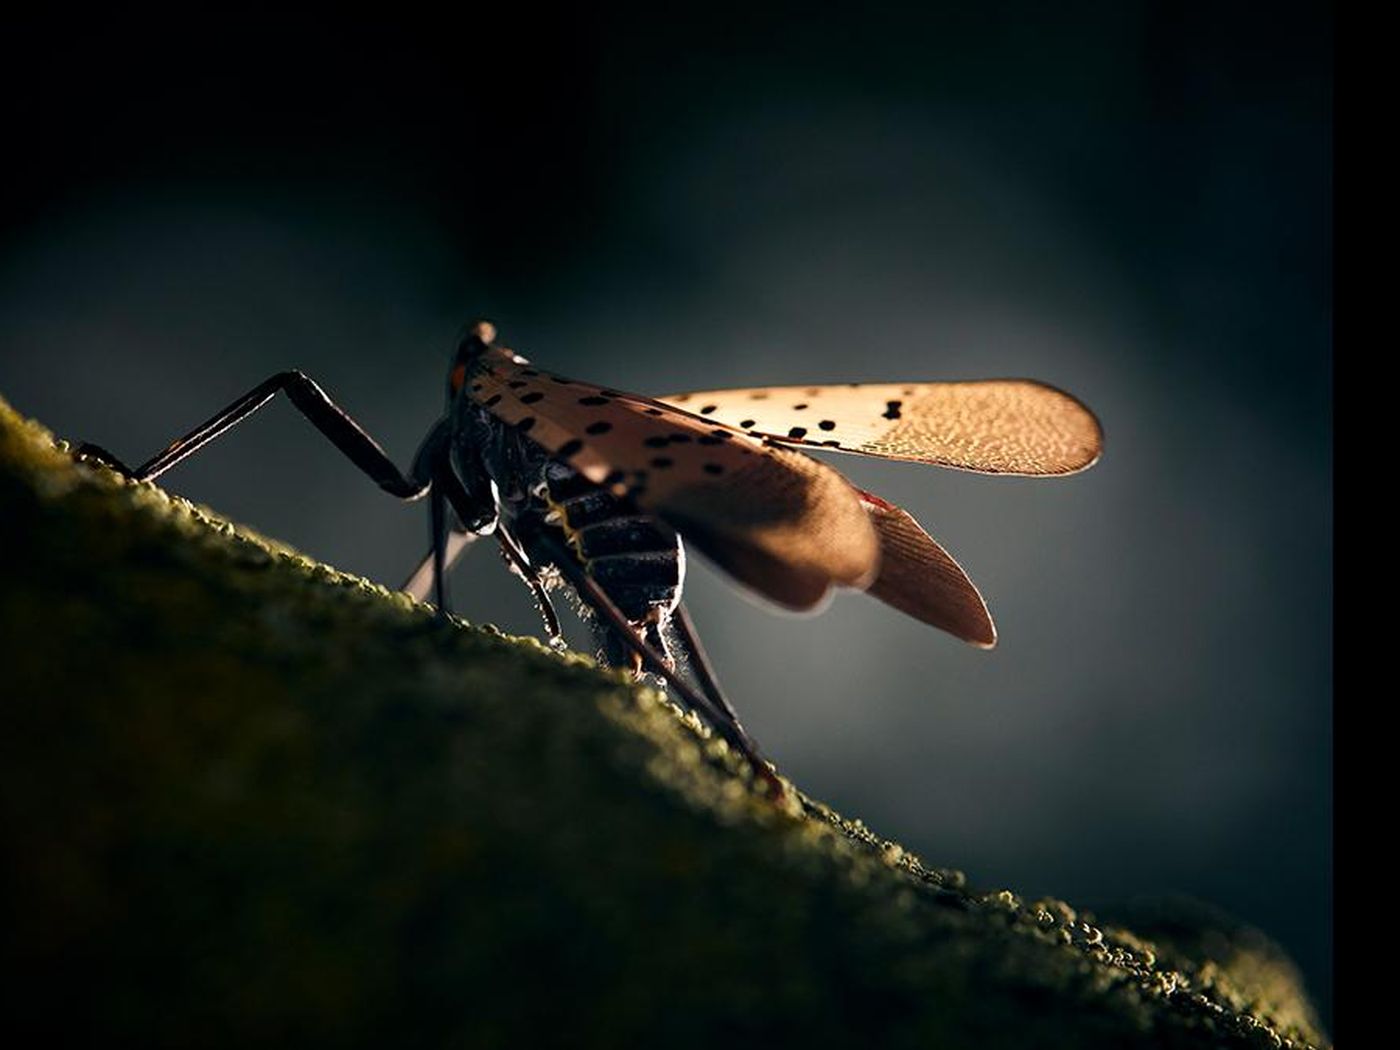 spotted lanternfly on a stick